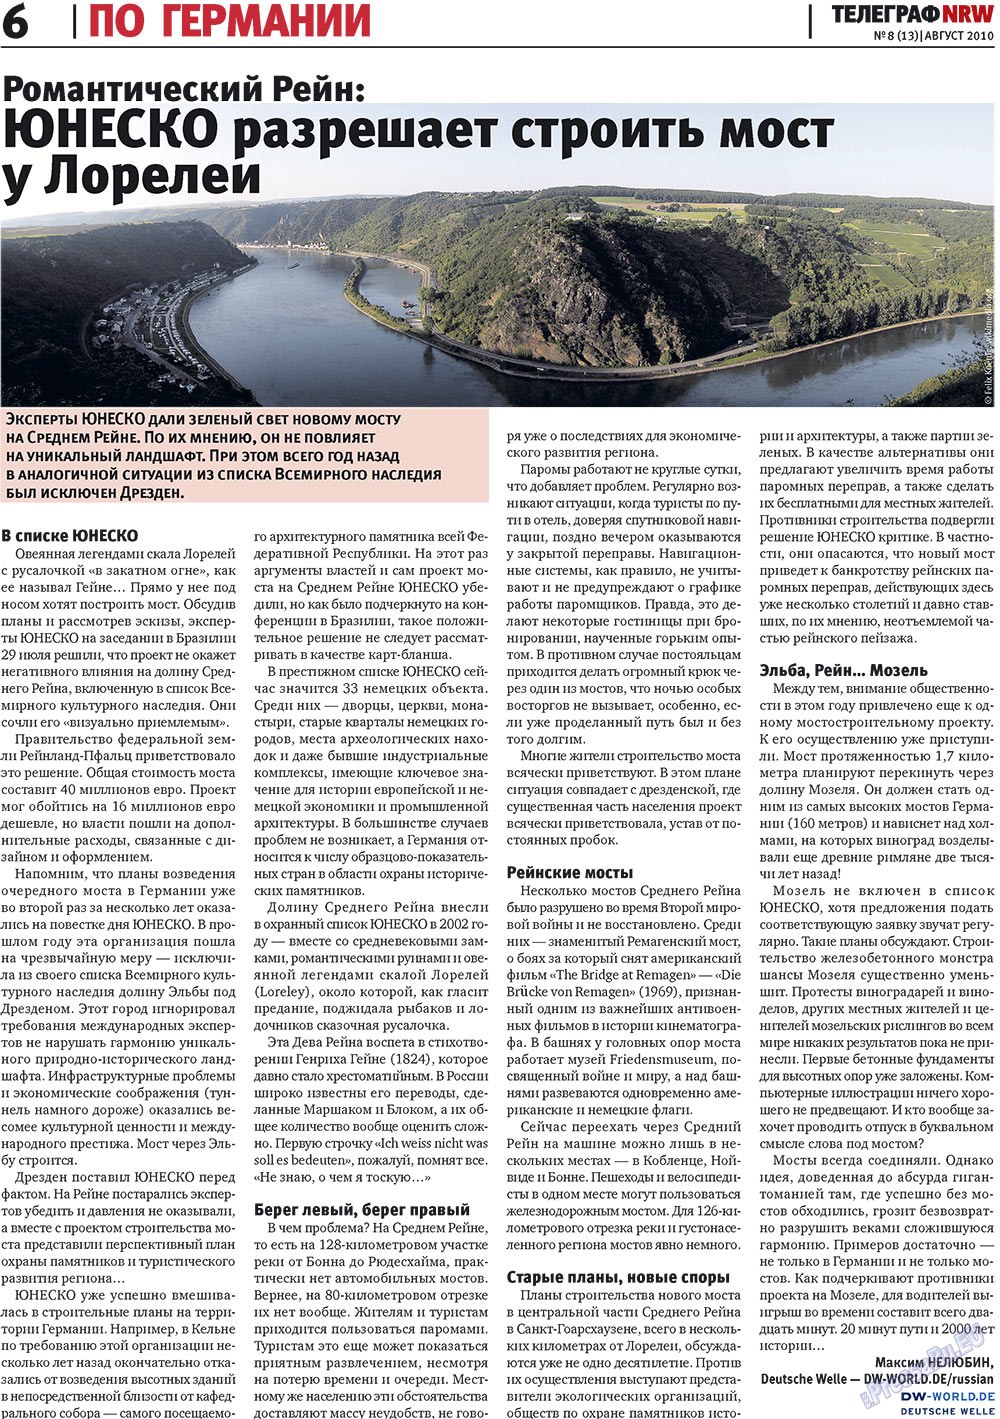 Телеграф NRW (газета). 2010 год, номер 8, стр. 6